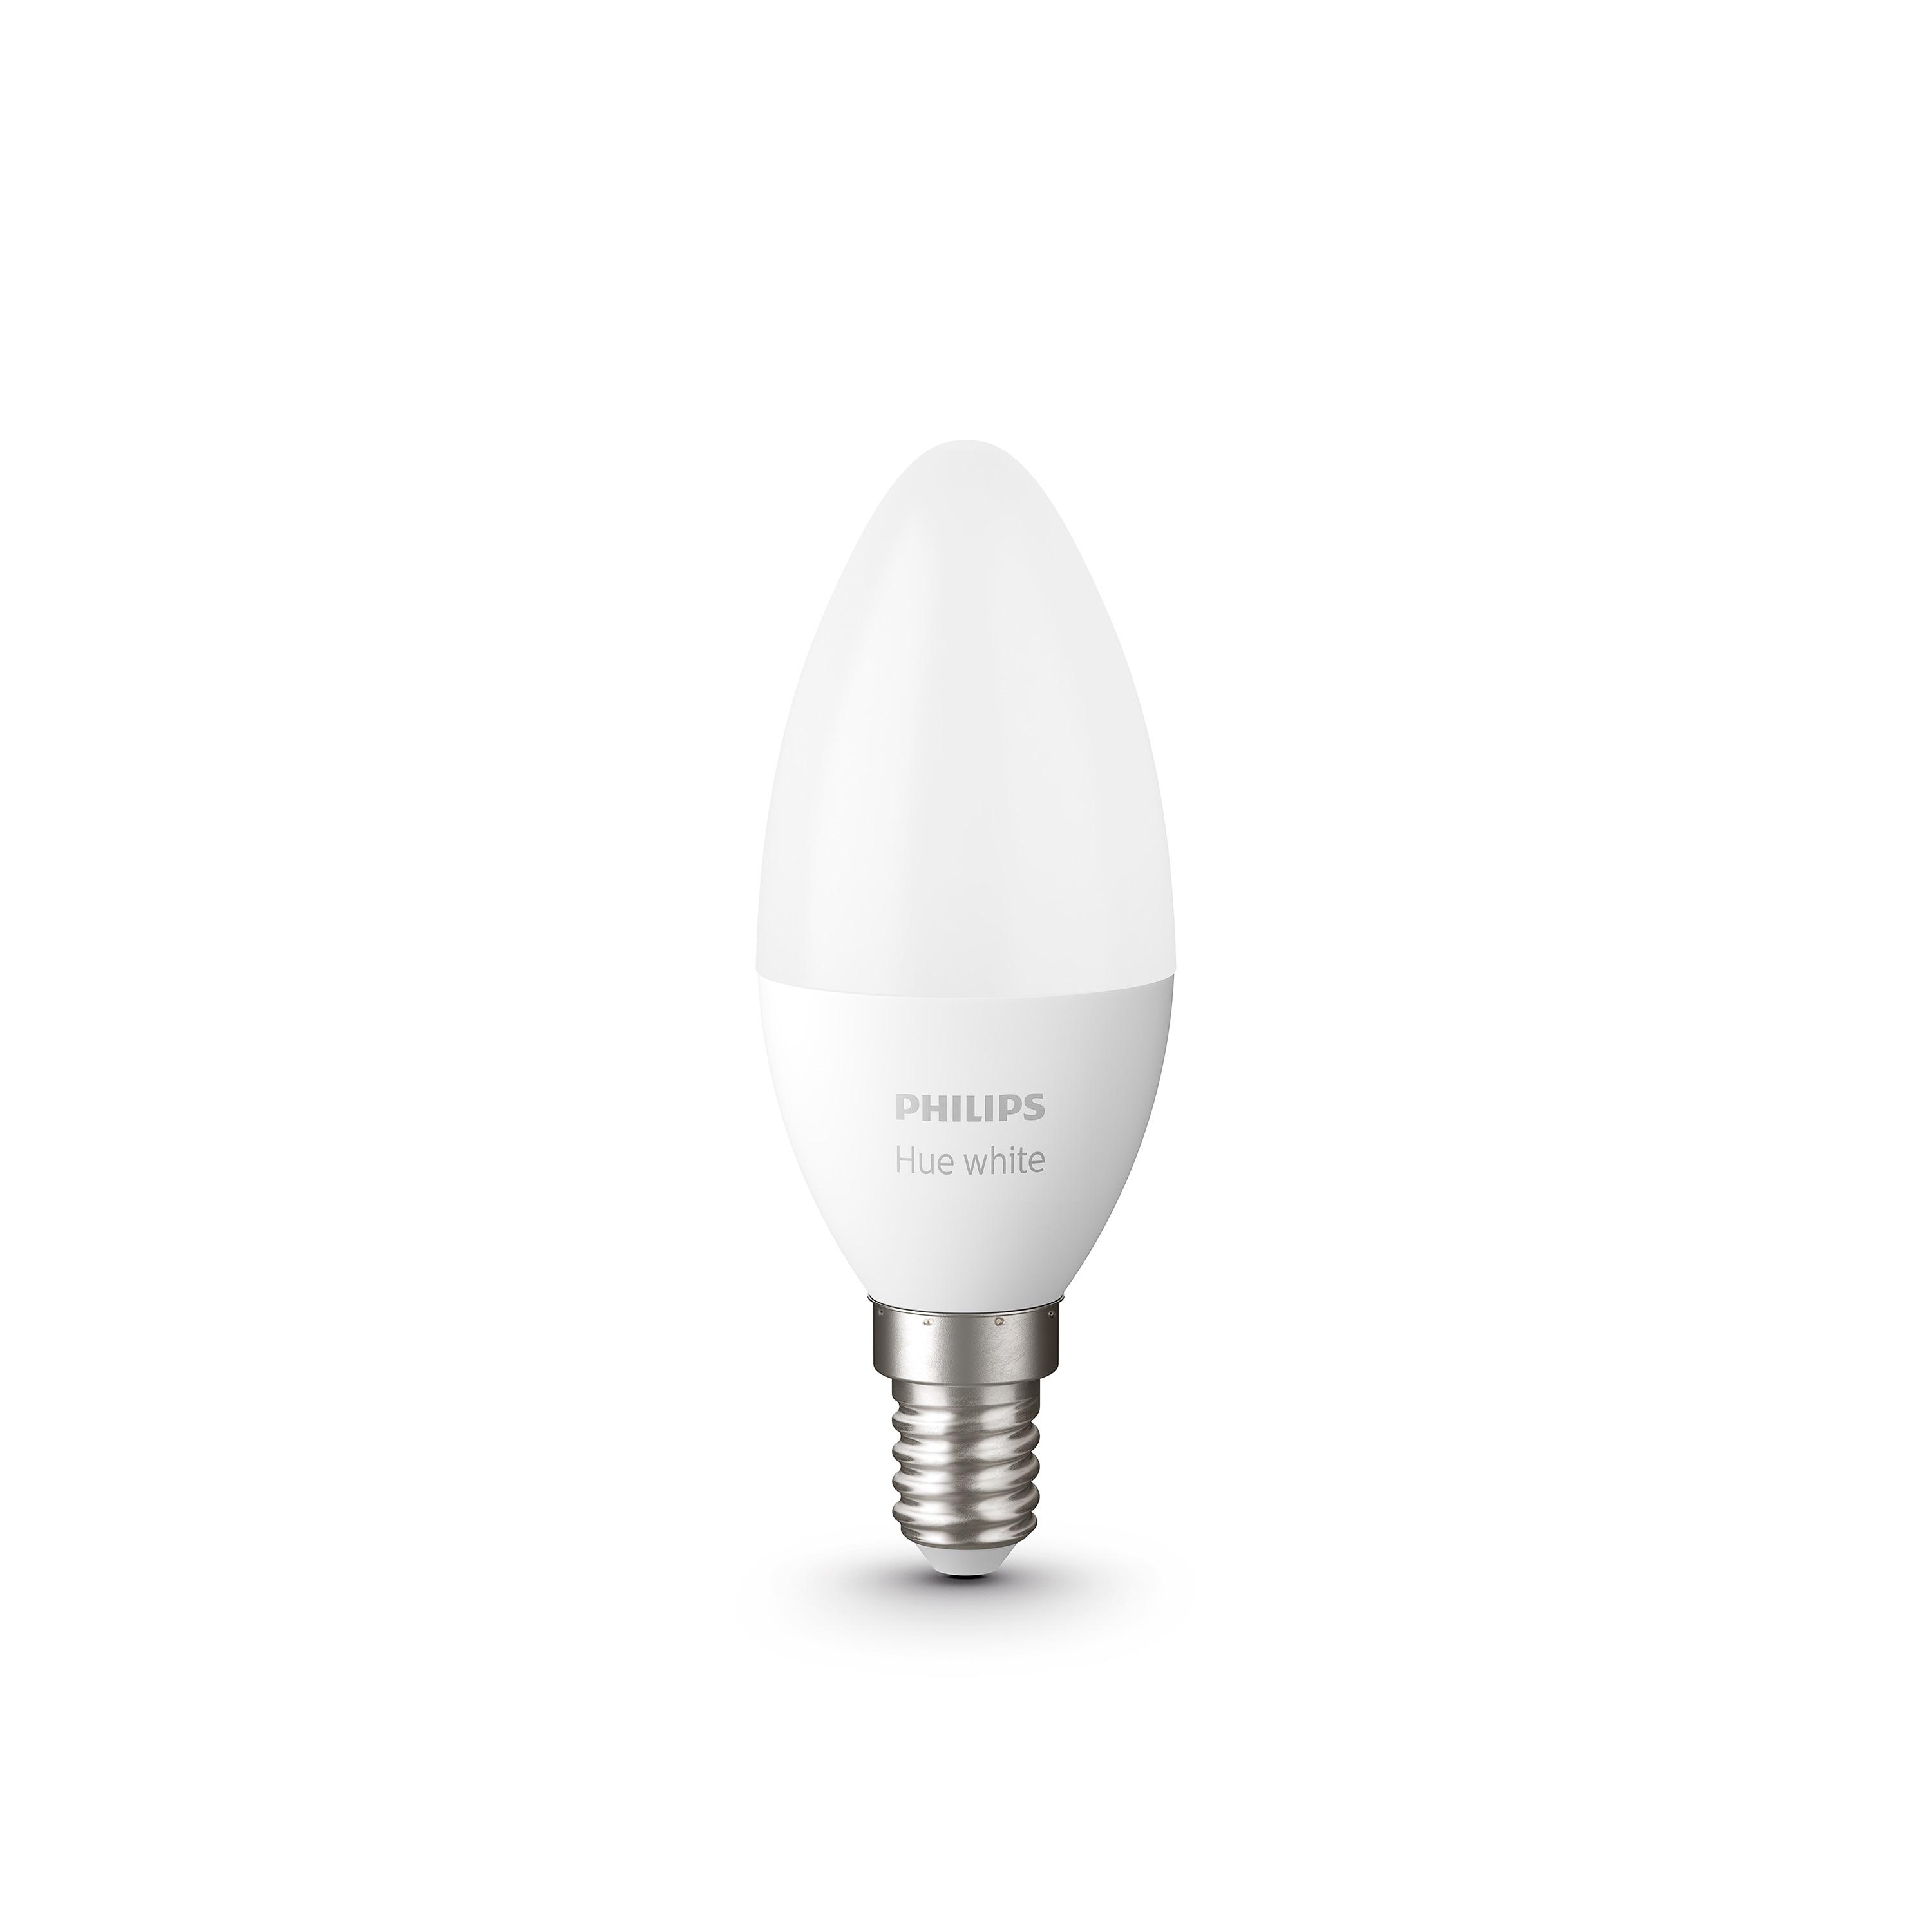 Smart cветодиодная лампа Philips Led Hue E14 5.5W(40W) 2700K Bluetooth Dim набор 2 шт (929002039904)